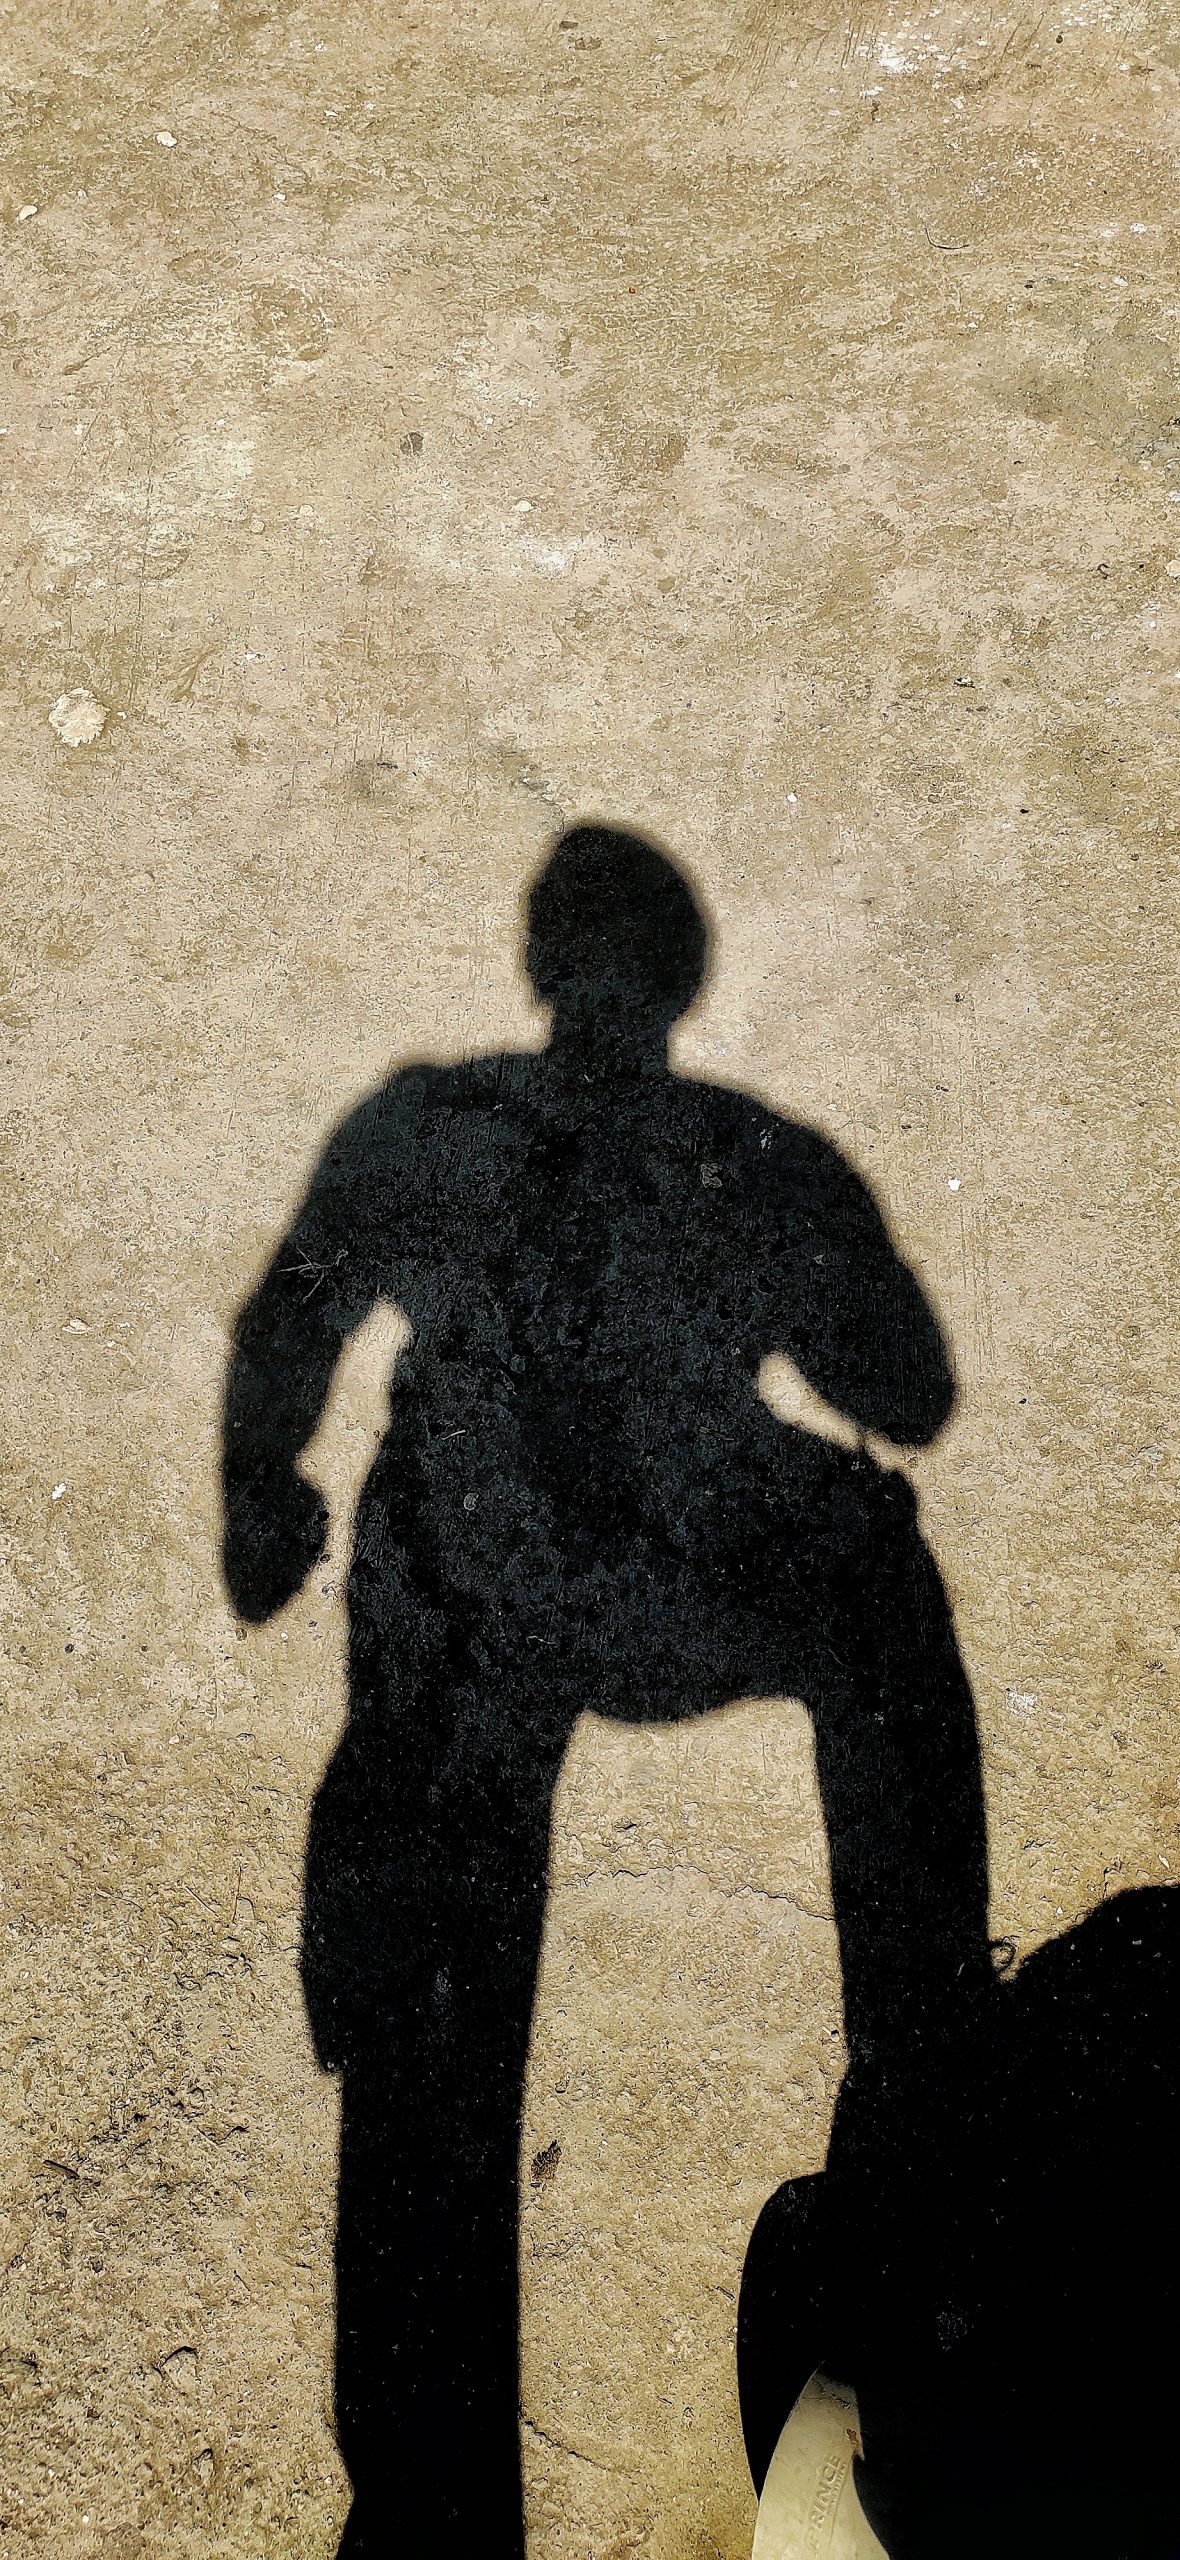 Shadow of human